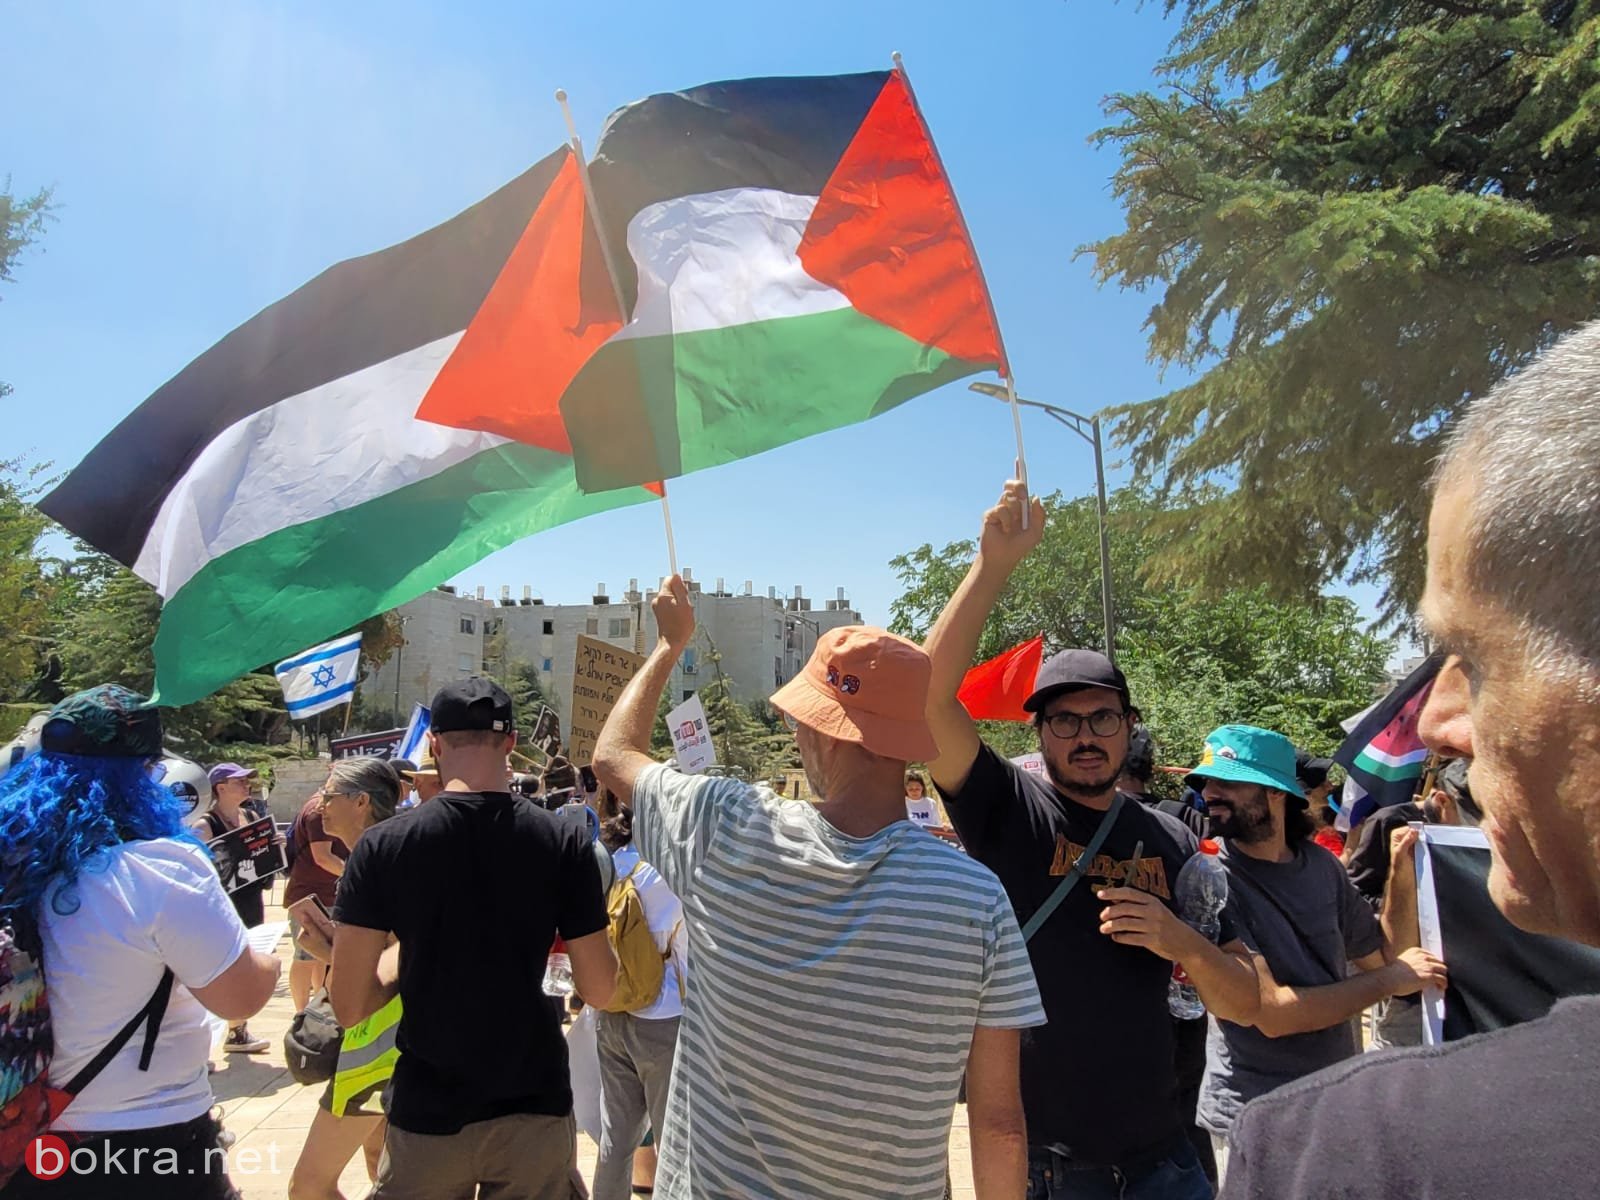 مظاهرة أمام منزل بن غفير في مستوطنة "كريات اربع"، ضد الاحتلال والفصل العنصري-10